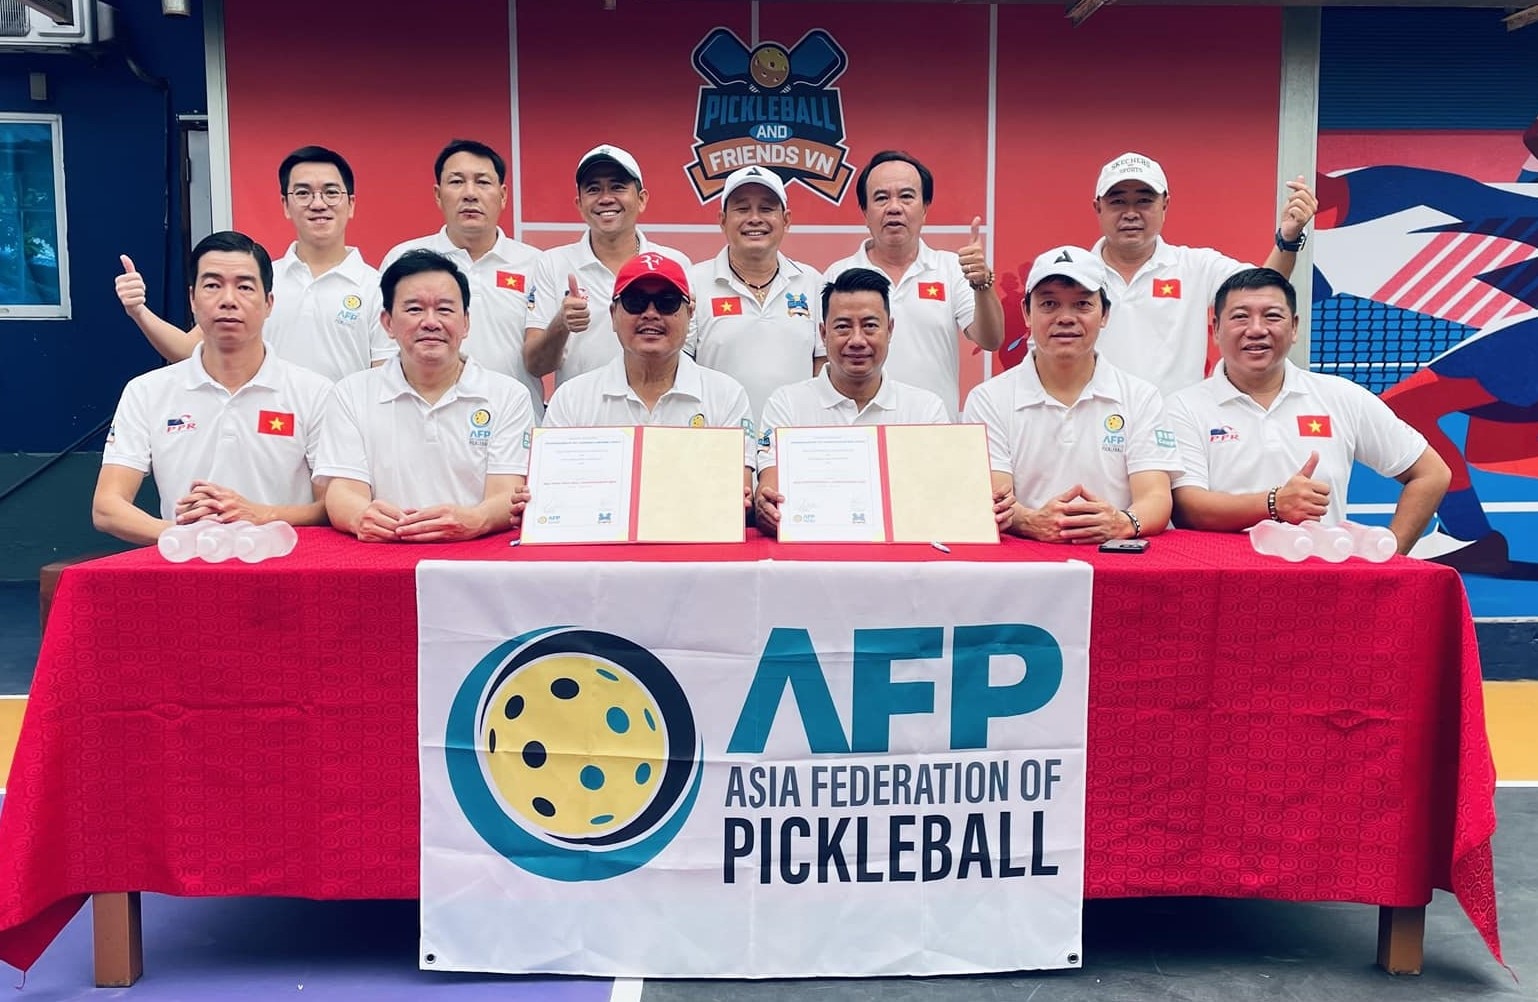 Liên đoàn Pickleball châu Á (AFP) trao quyền tổ chức giải AOPC cho CLB Pickleball And Friends VN